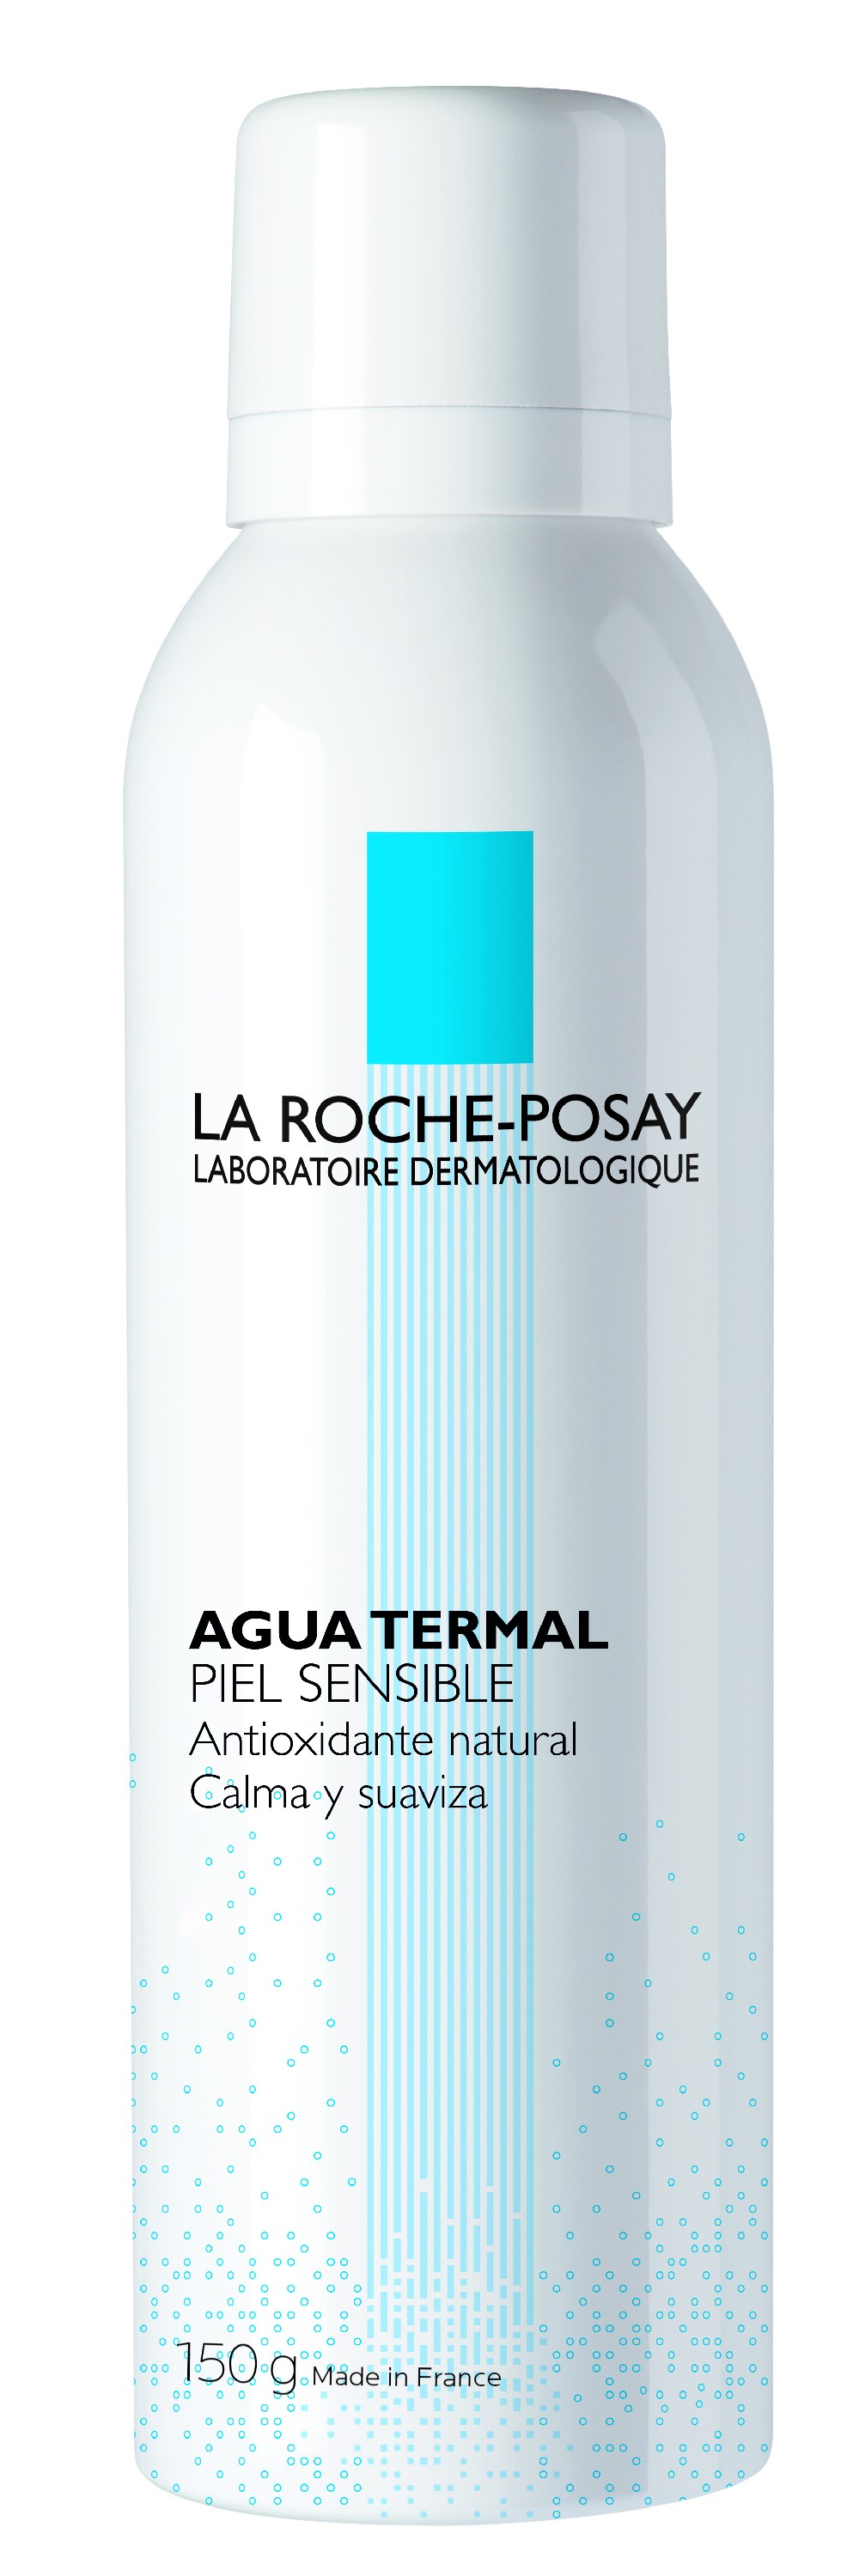 Água termal La Roche-Posay, 150g